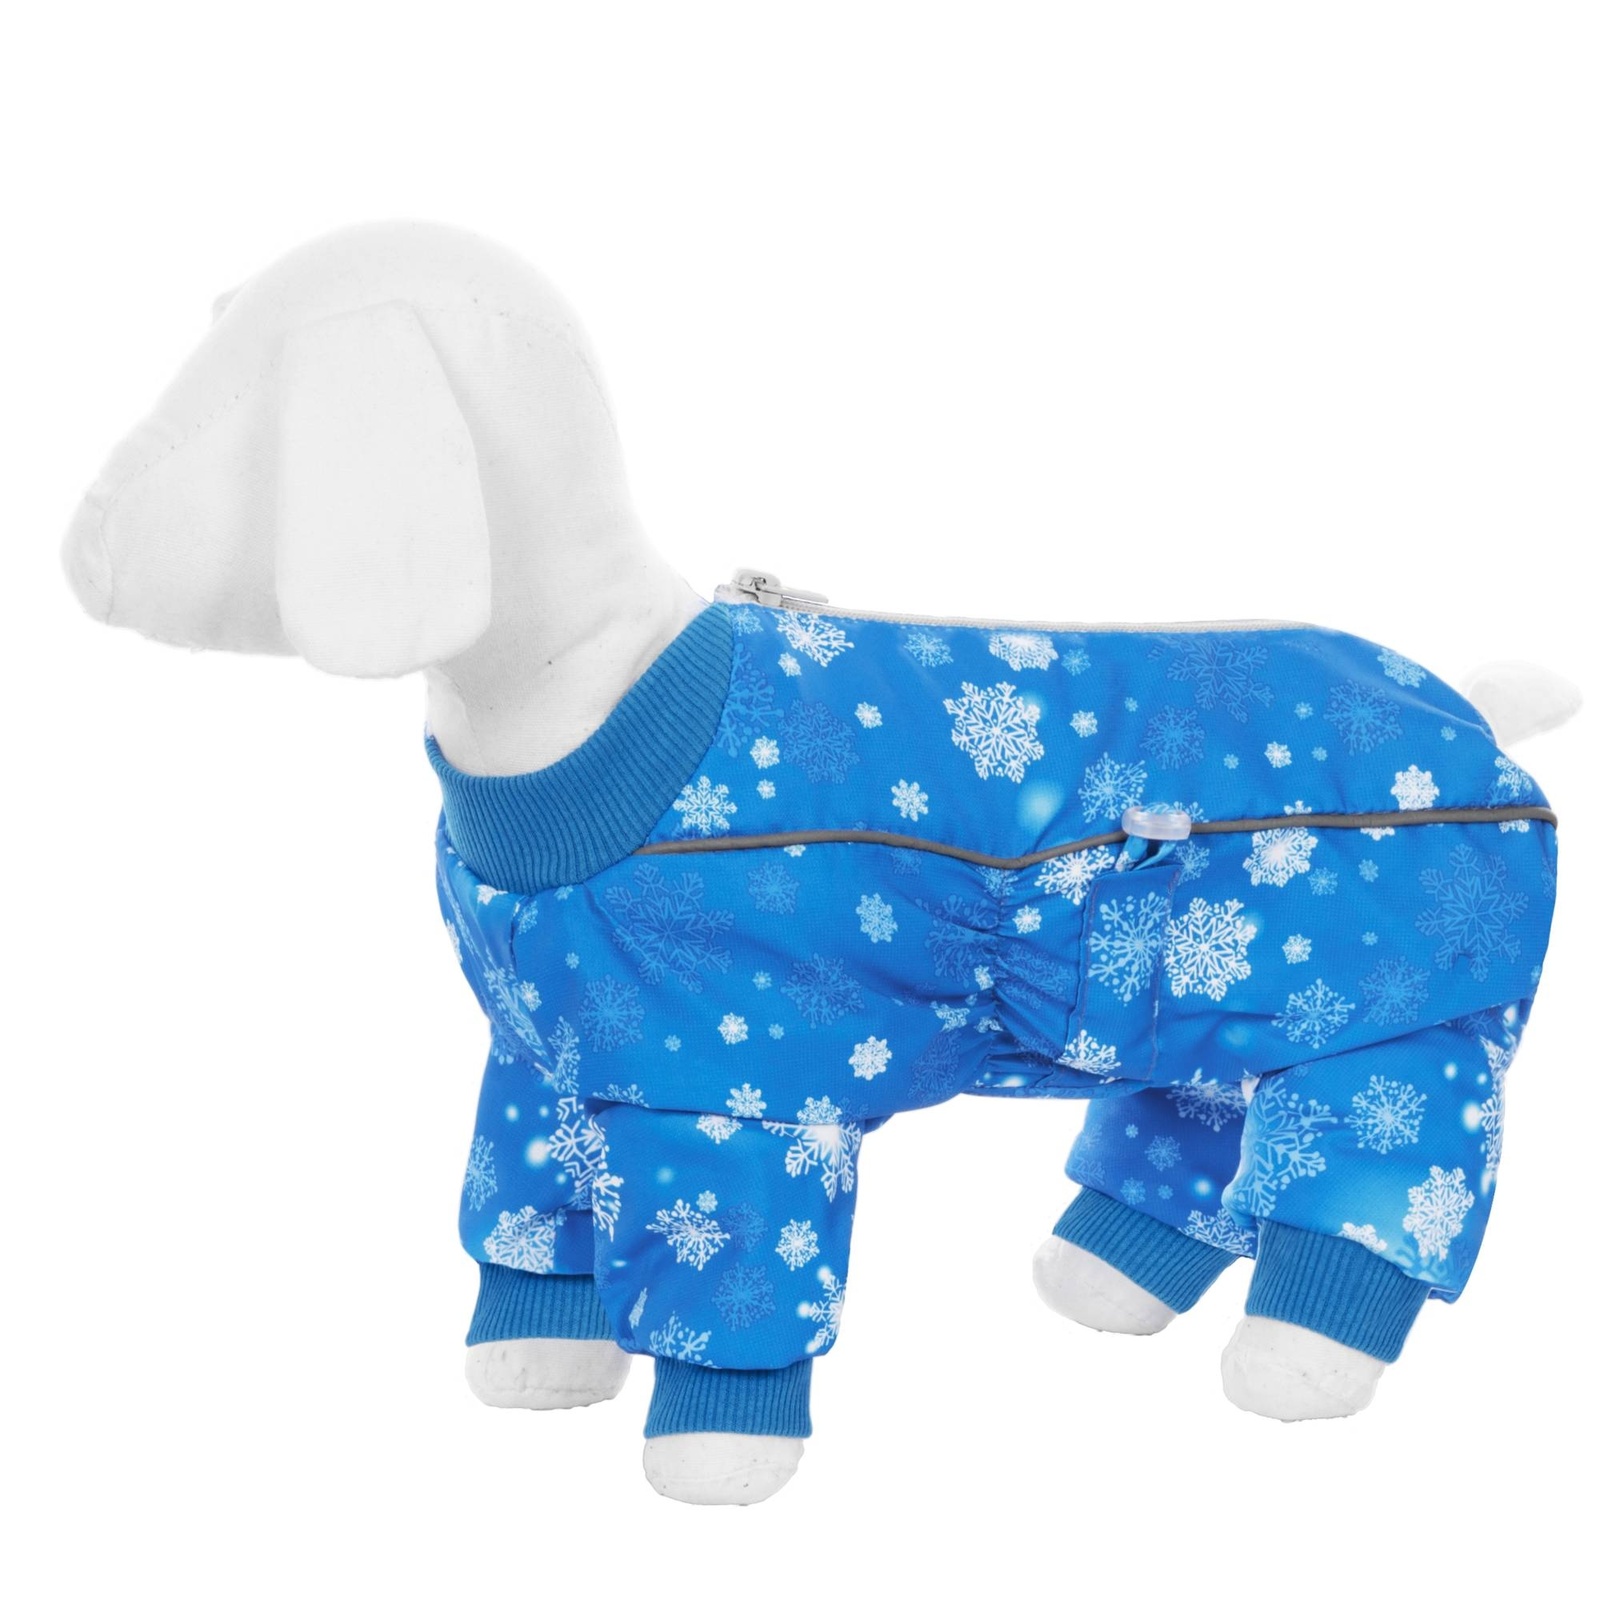 Yami-Yami одежда Yami-Yami одежда комбинезон для собак малых пород, на меху с рисунком снежинки (M) yami yami одежда yami yami одежда комбинезон для собак малых пород на меху с рисунком снежинки m